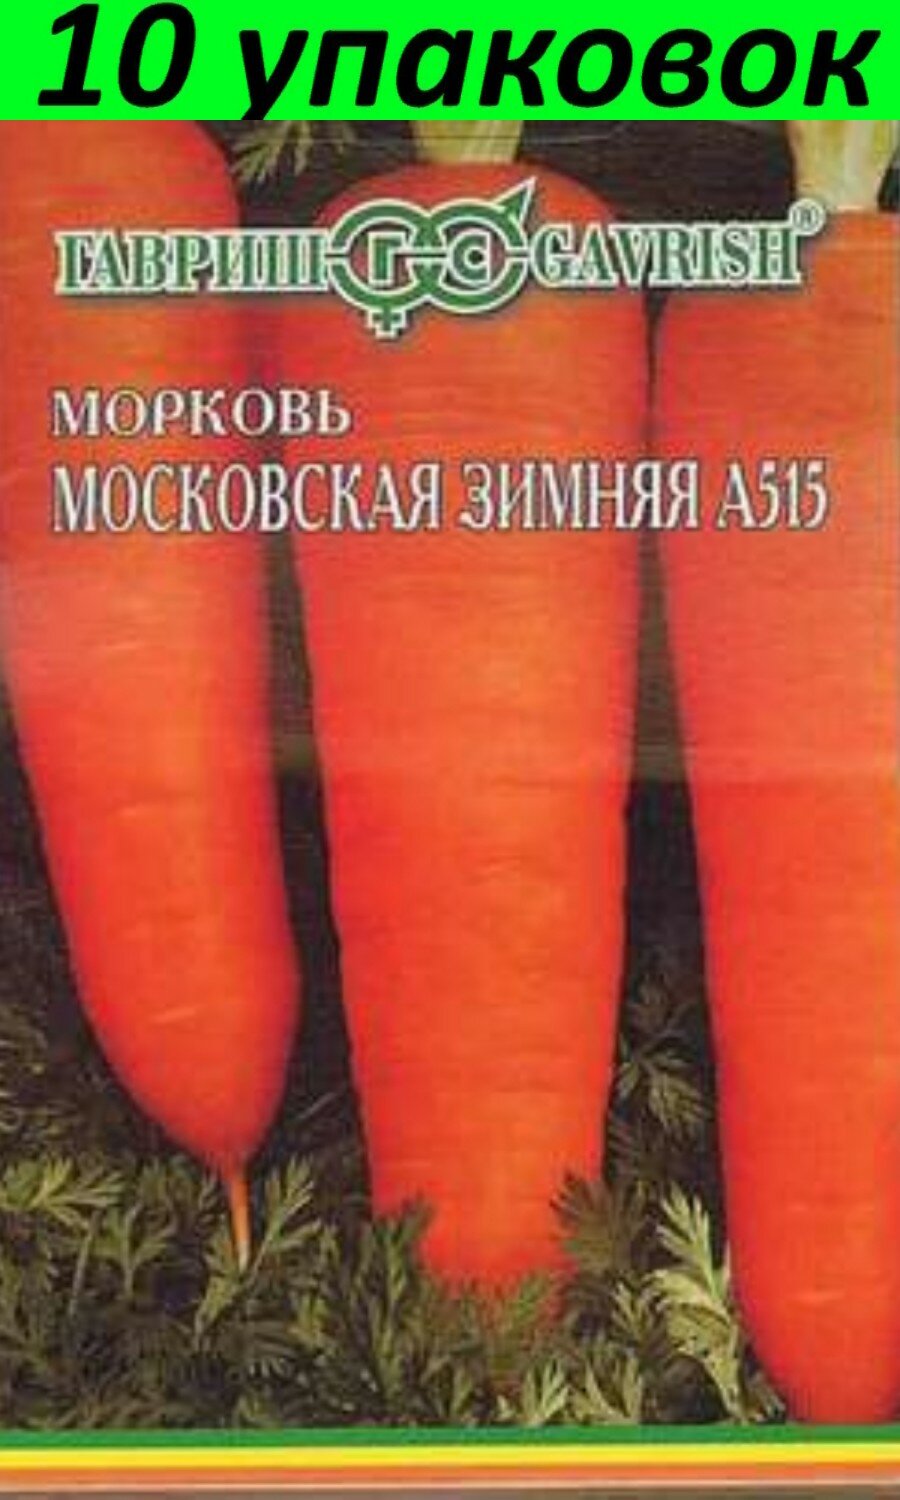 Семена Морковь на ленте Московская зимняя А 515 8м 10уп (Гавриш)